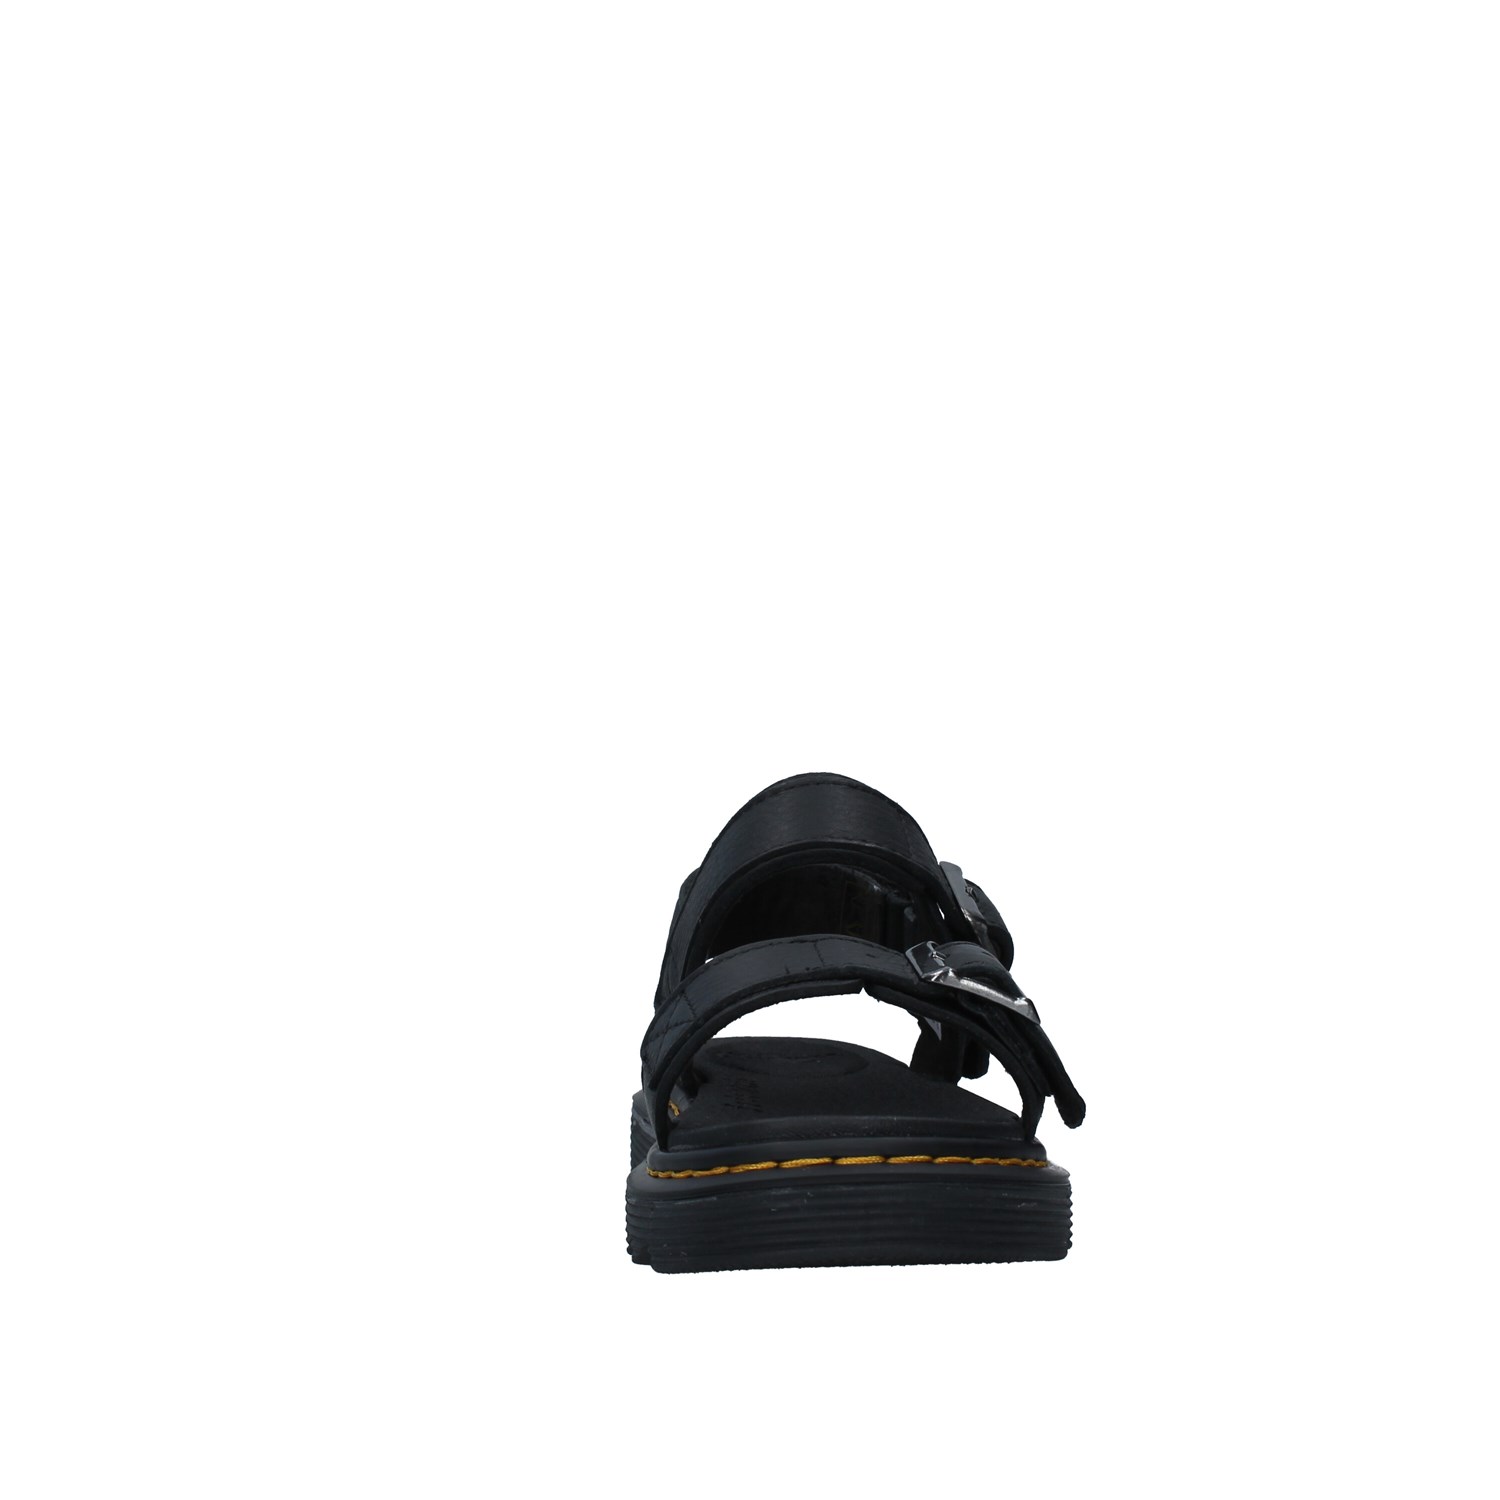 Dr. Martens Shoes Unisex Junior Netherlands BLACK KYLE J